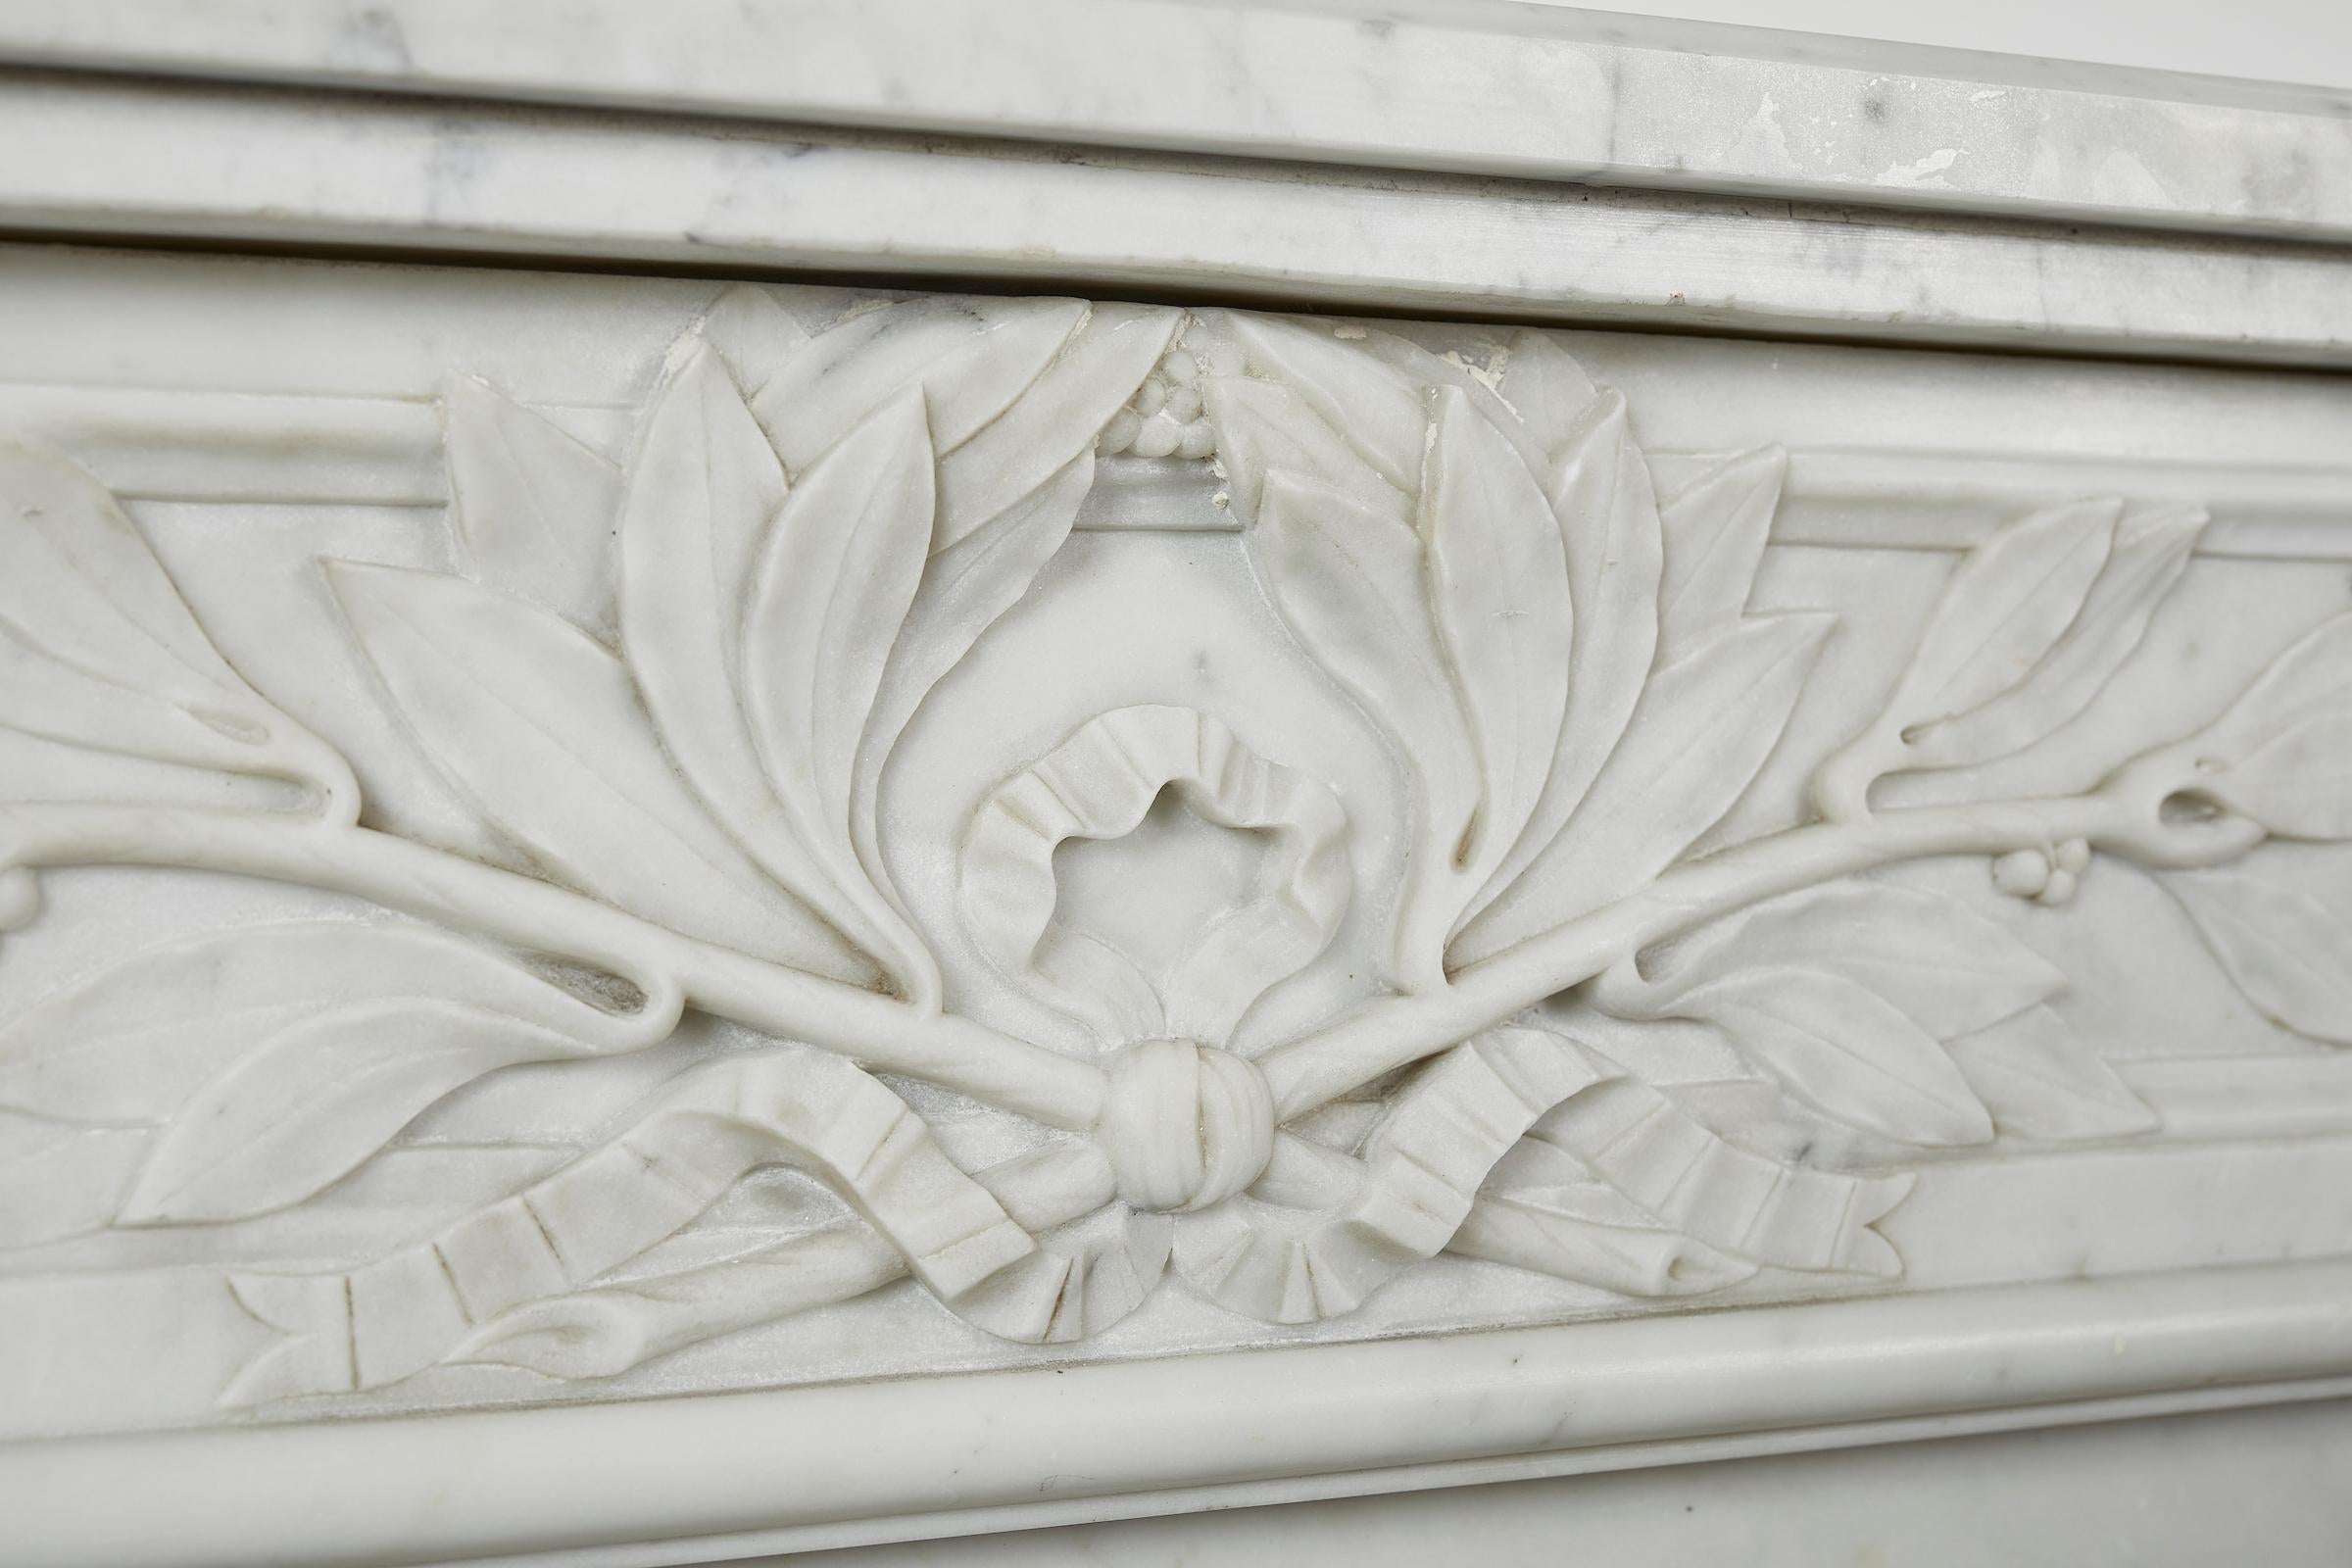 Repisa (chimenea) de mármol blanco de Carrara, estilo Luis XVI, con semicolumnas y motivos de palmeras de olivo.
Dimensiones interiores: Alto 33, Ancho 37,25 pulg.